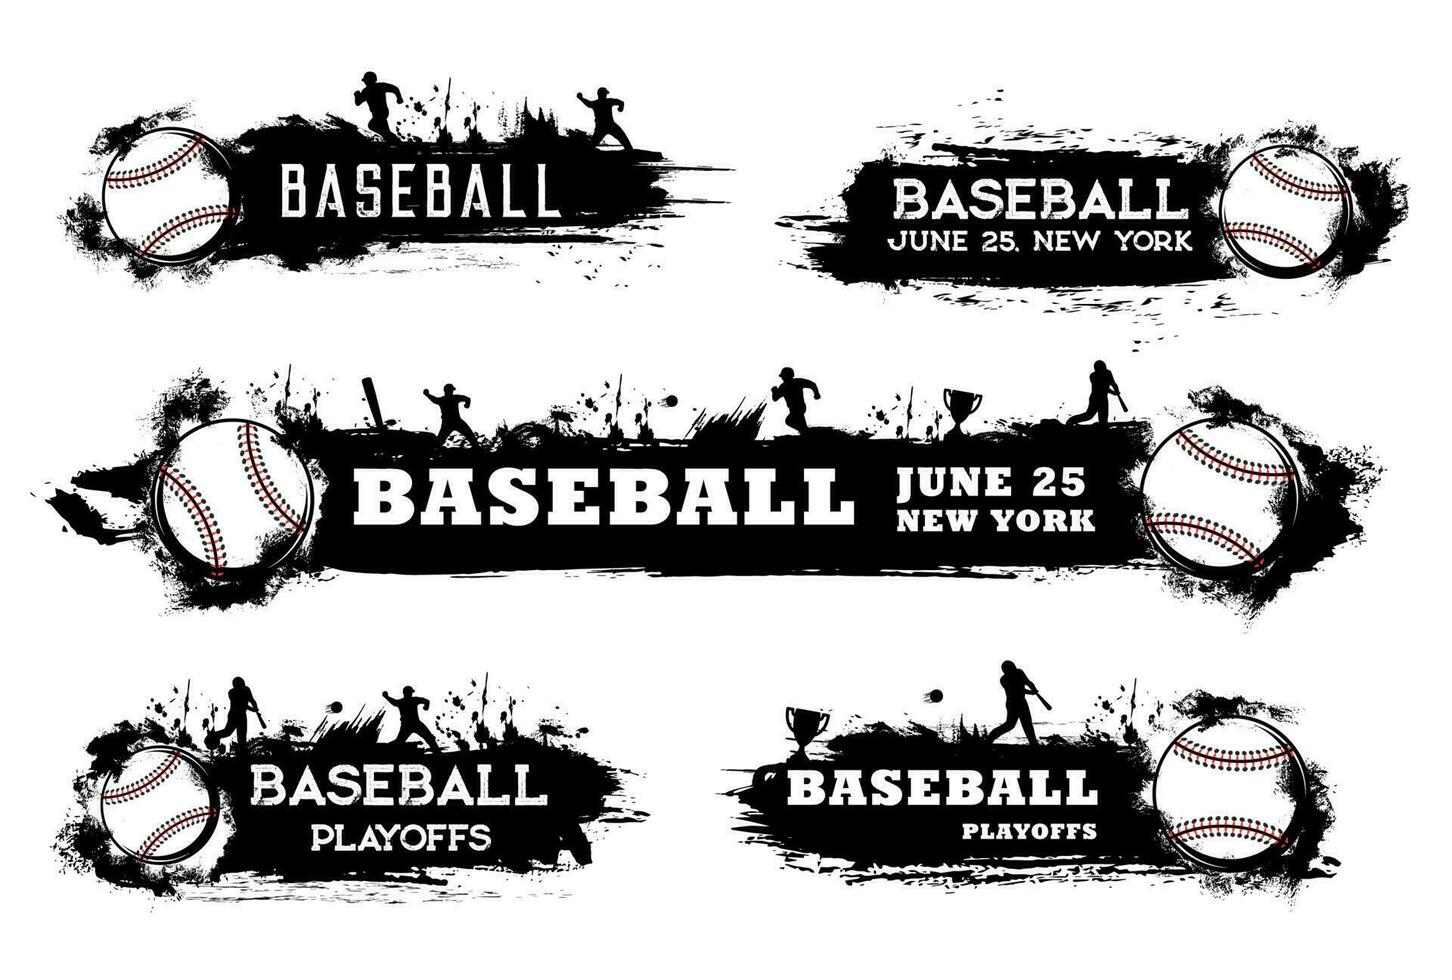 Baseball playoff banner, softball sport tournament vector